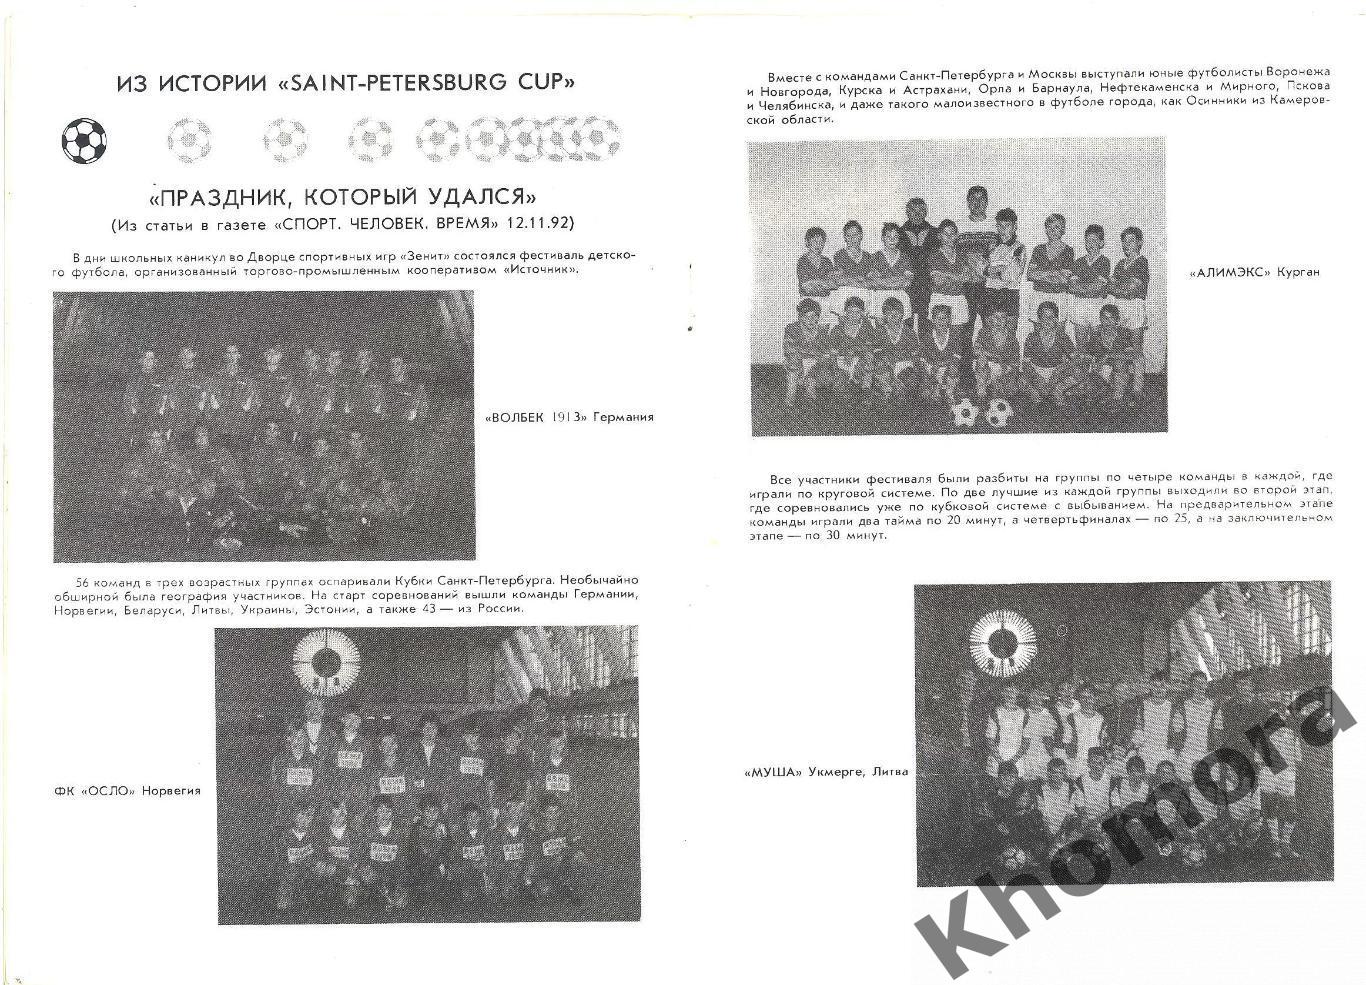 Кубок Санкт-Петербурга 1993 (международный юношеский турнир) - офиц.программа 1